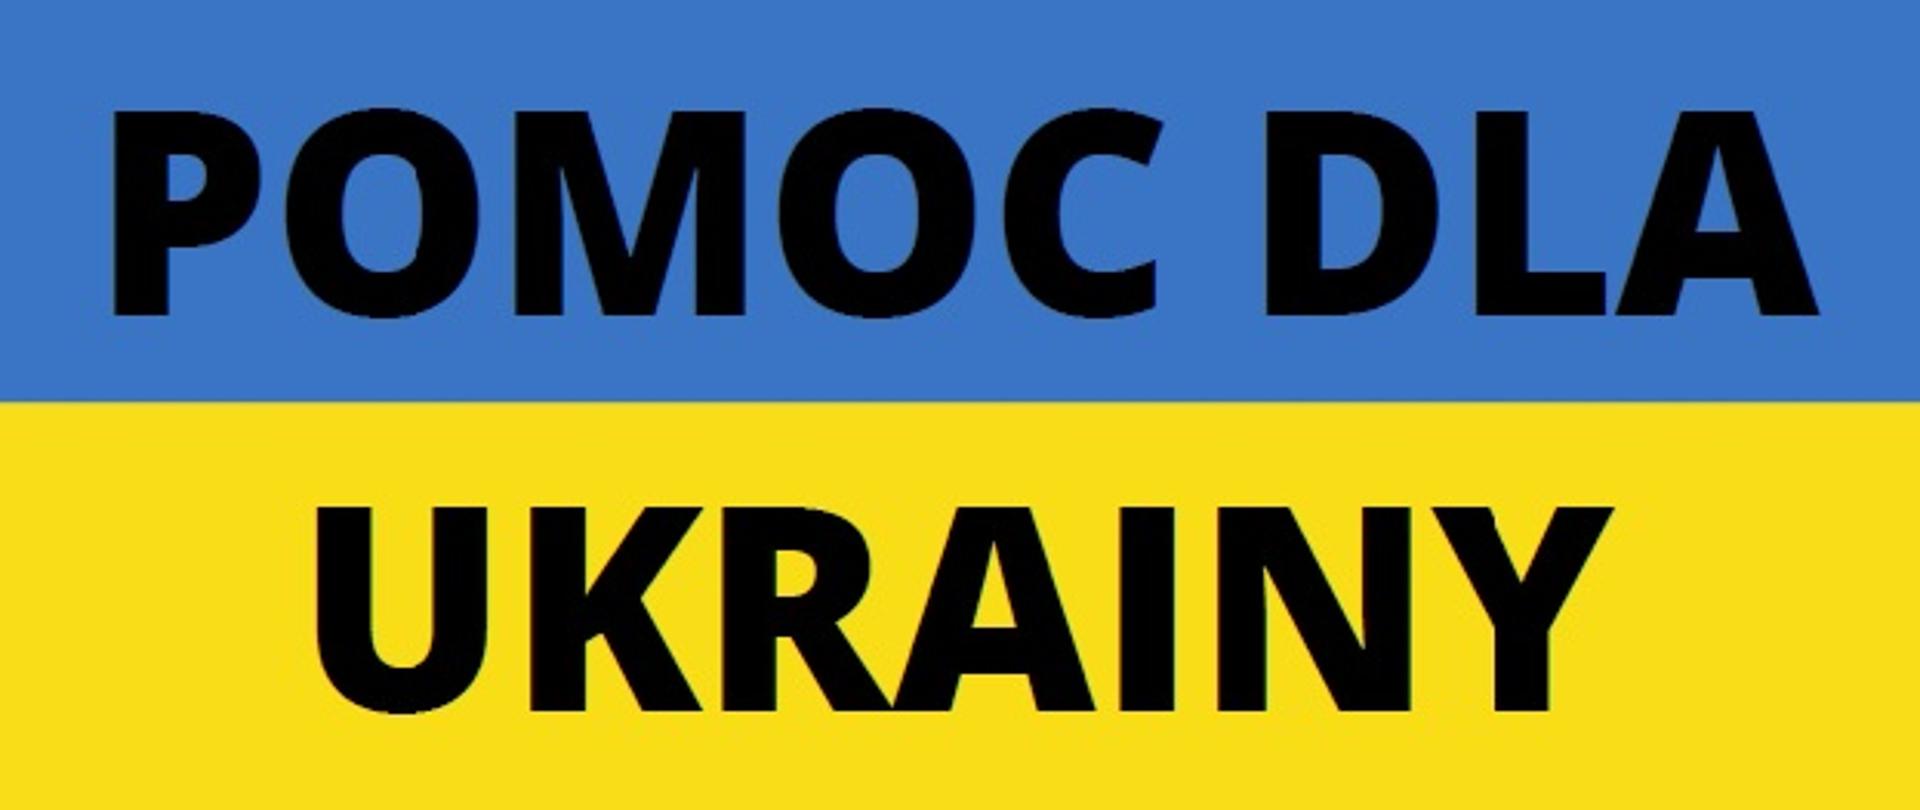 Baner o treści pomoc dla Ukrainy na tle flagi w barwach narodowych Ukrainy żółto niebieskich